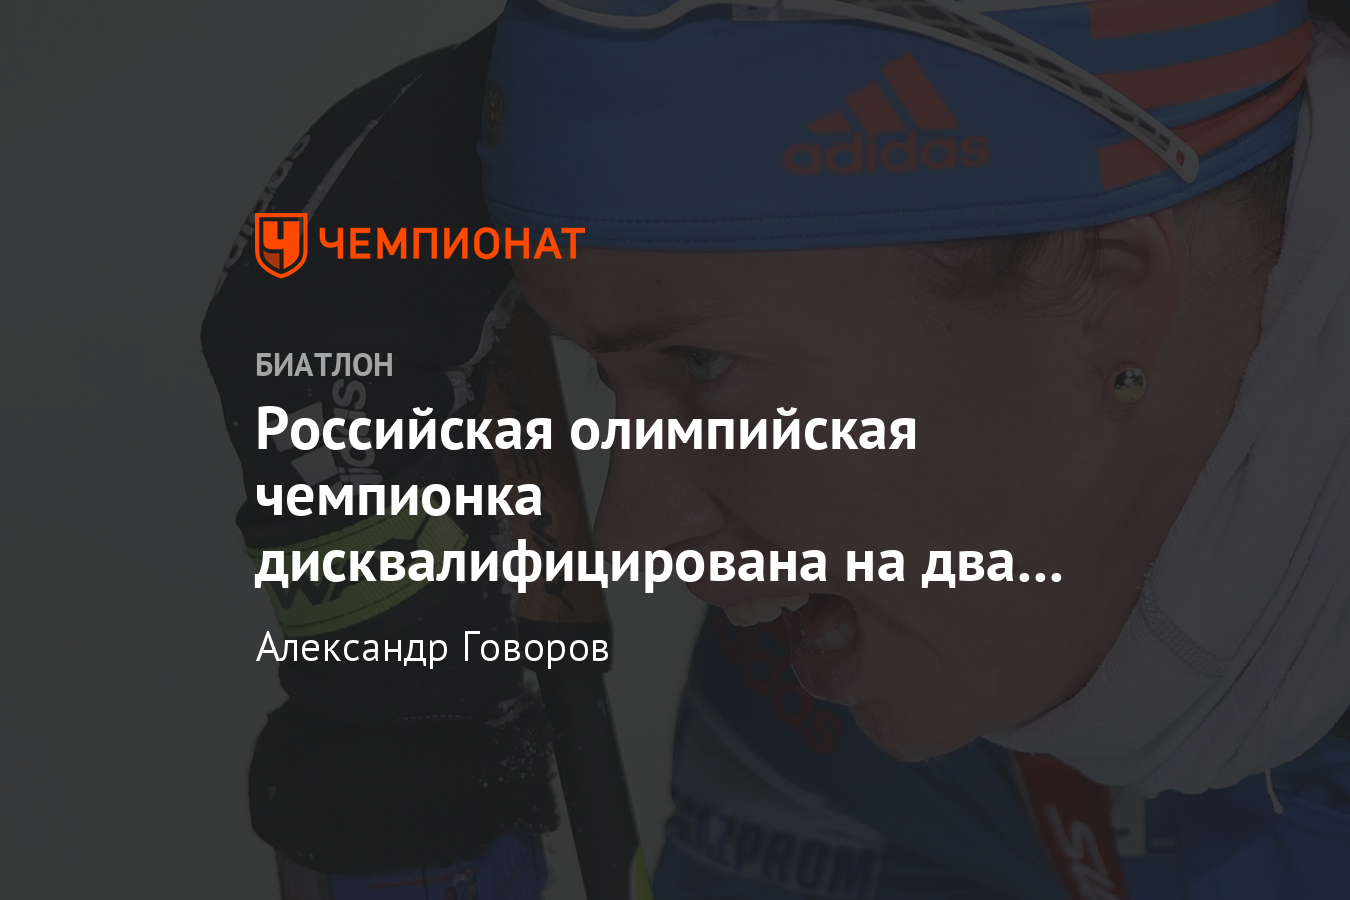 Олимпийская чемпионка Светлана Слепцова дисквалифицирована на два года за допинг — почему?